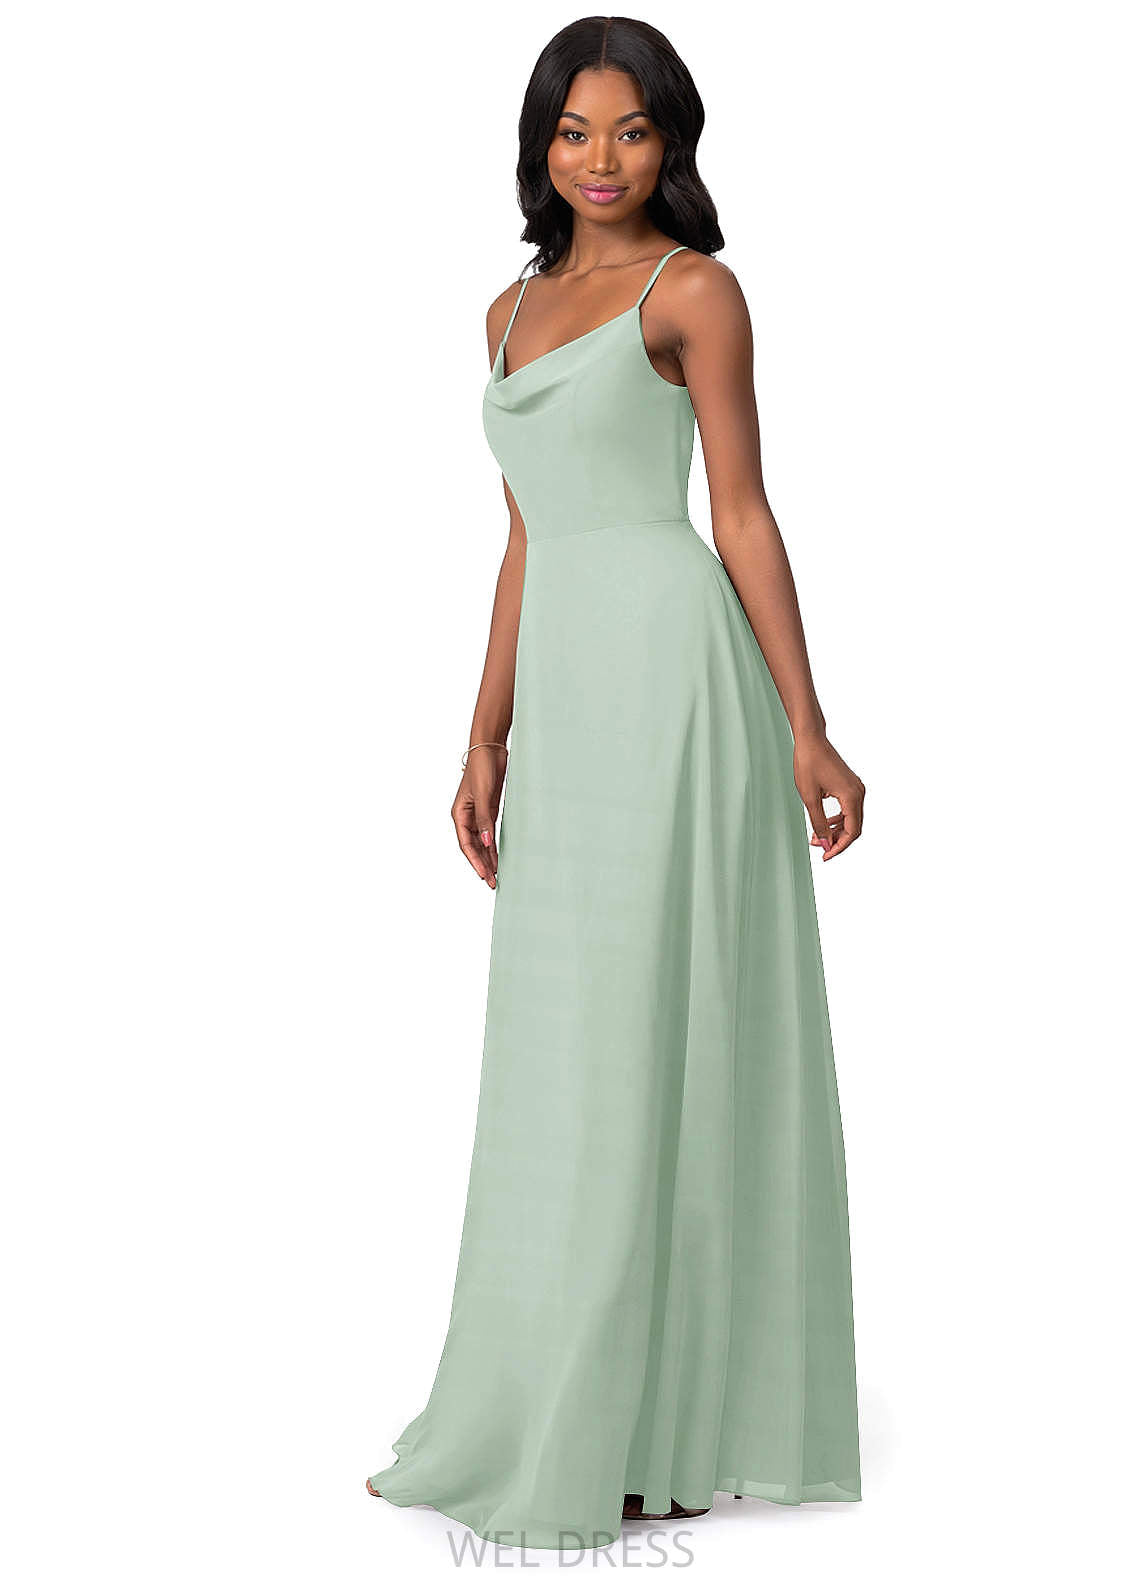 Uerica Natural Waist V-Neck A-Line/Princess Sleeveless Floor Length Bridesmaid Dresses